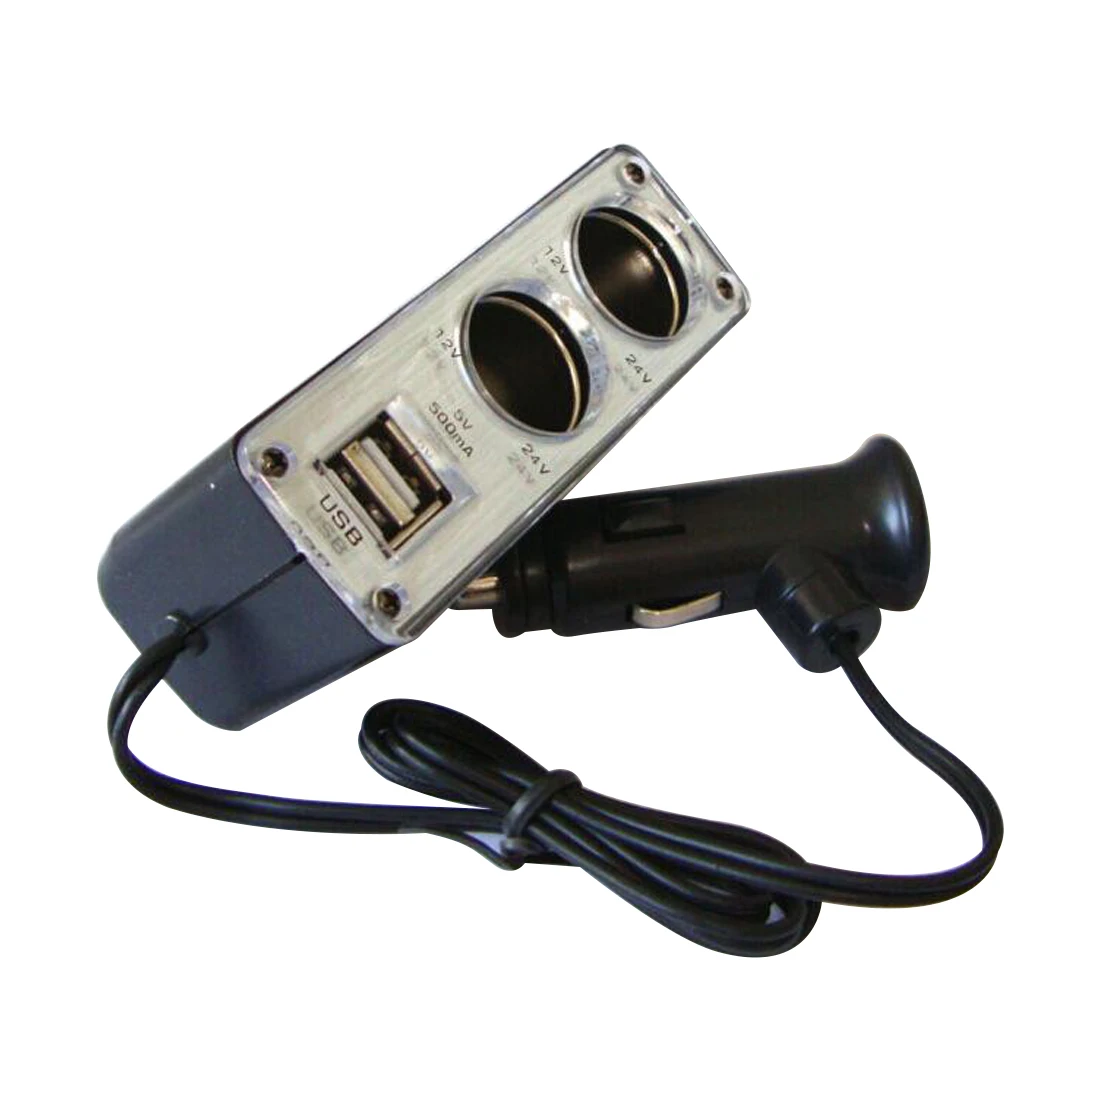 Dewtreetali 1A 2 способ нескольких гнездо Автомобильное зарядное устройство автомобиля Авто разветвитель прикуривателя и порты USB переходник